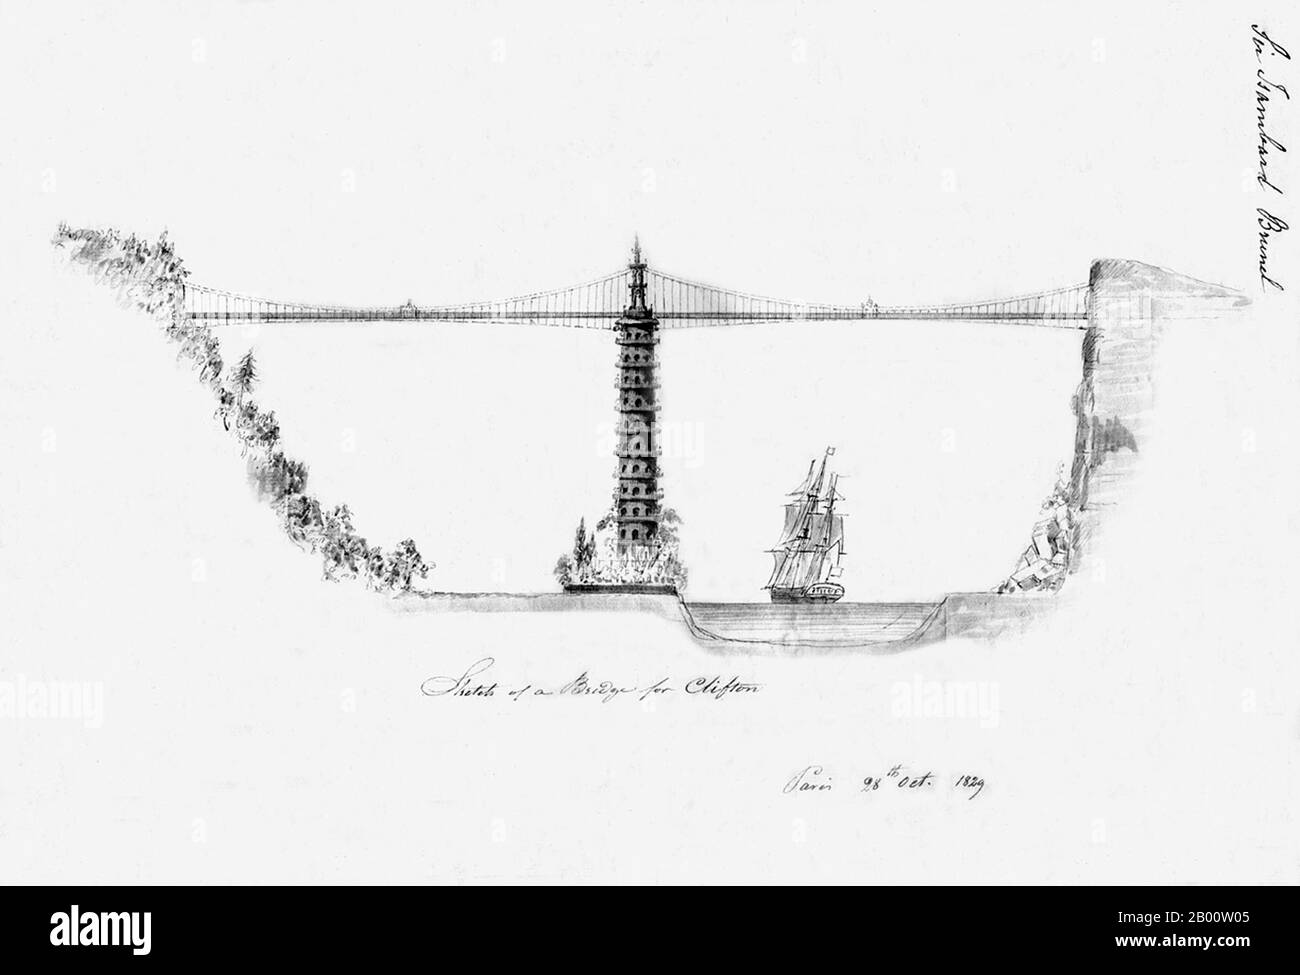 Un design remarquable pour un pont 'Chinoiserie' qui traverse la gorge d'Avon à Bristol par Sir Isambard Kingdom Brunel, 1829. Le pont suspendu de Clifton a finalement été achevé en 1864 après la conception de Brunel, mais sans la pagode. Banque D'Images